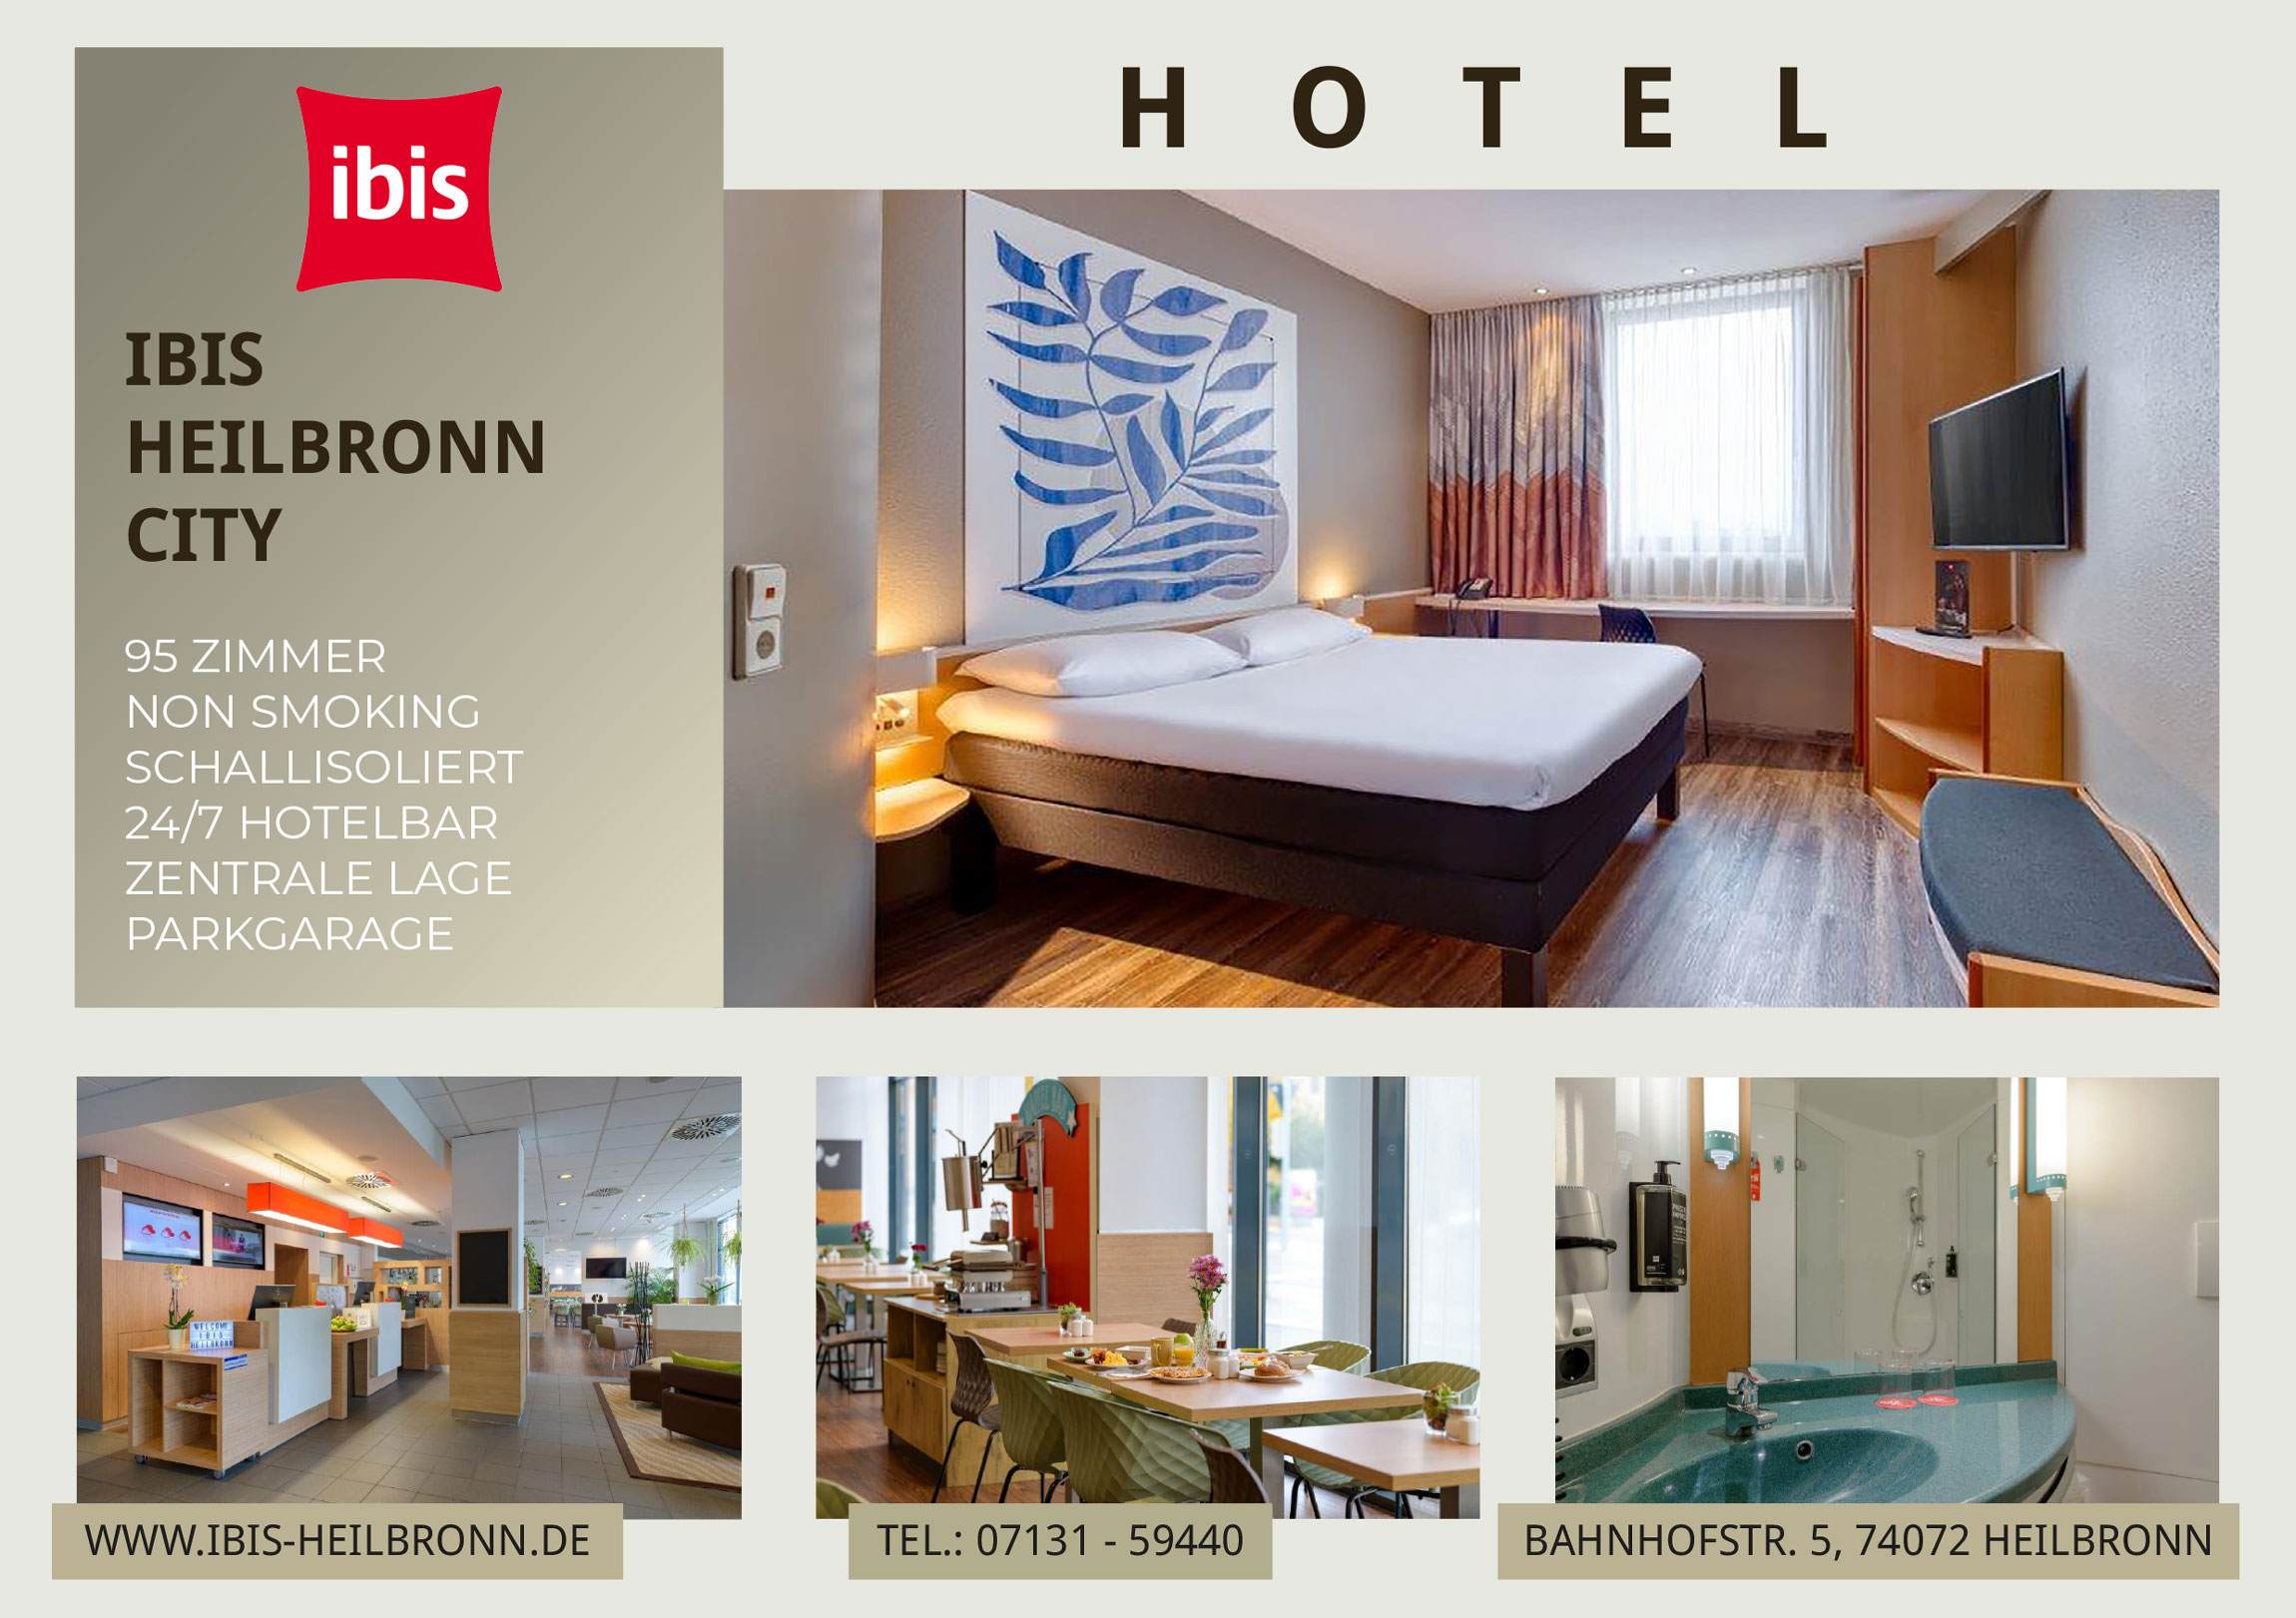 ibis Hotel Heilbronn Werbung